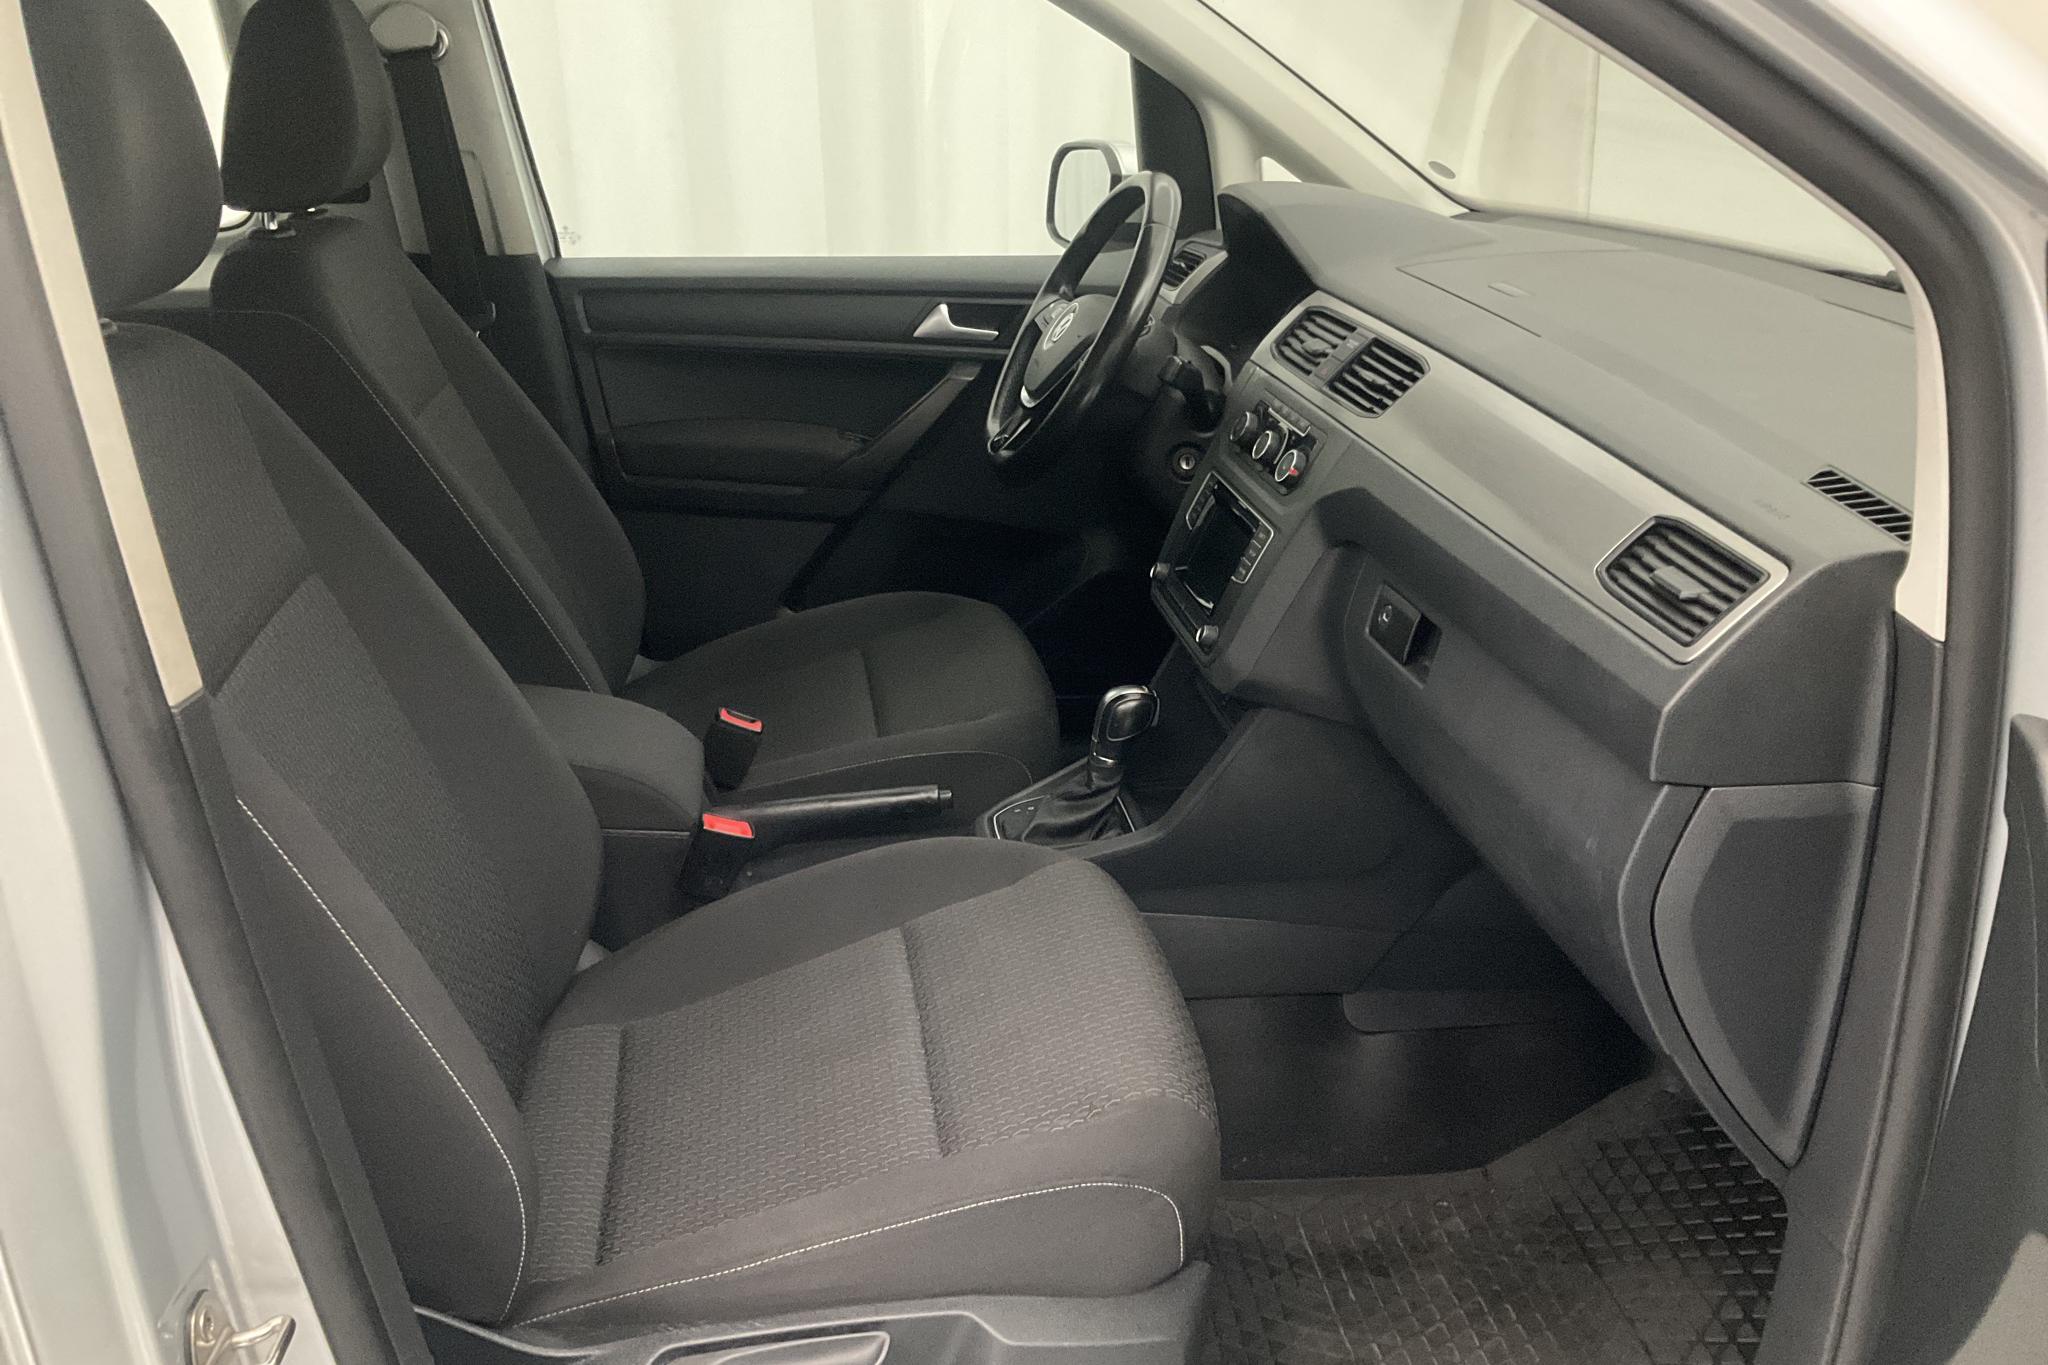 VW Caddy MPV 2.0 TDI (102hk) - 12 056 mil - Automat - silver - 2018